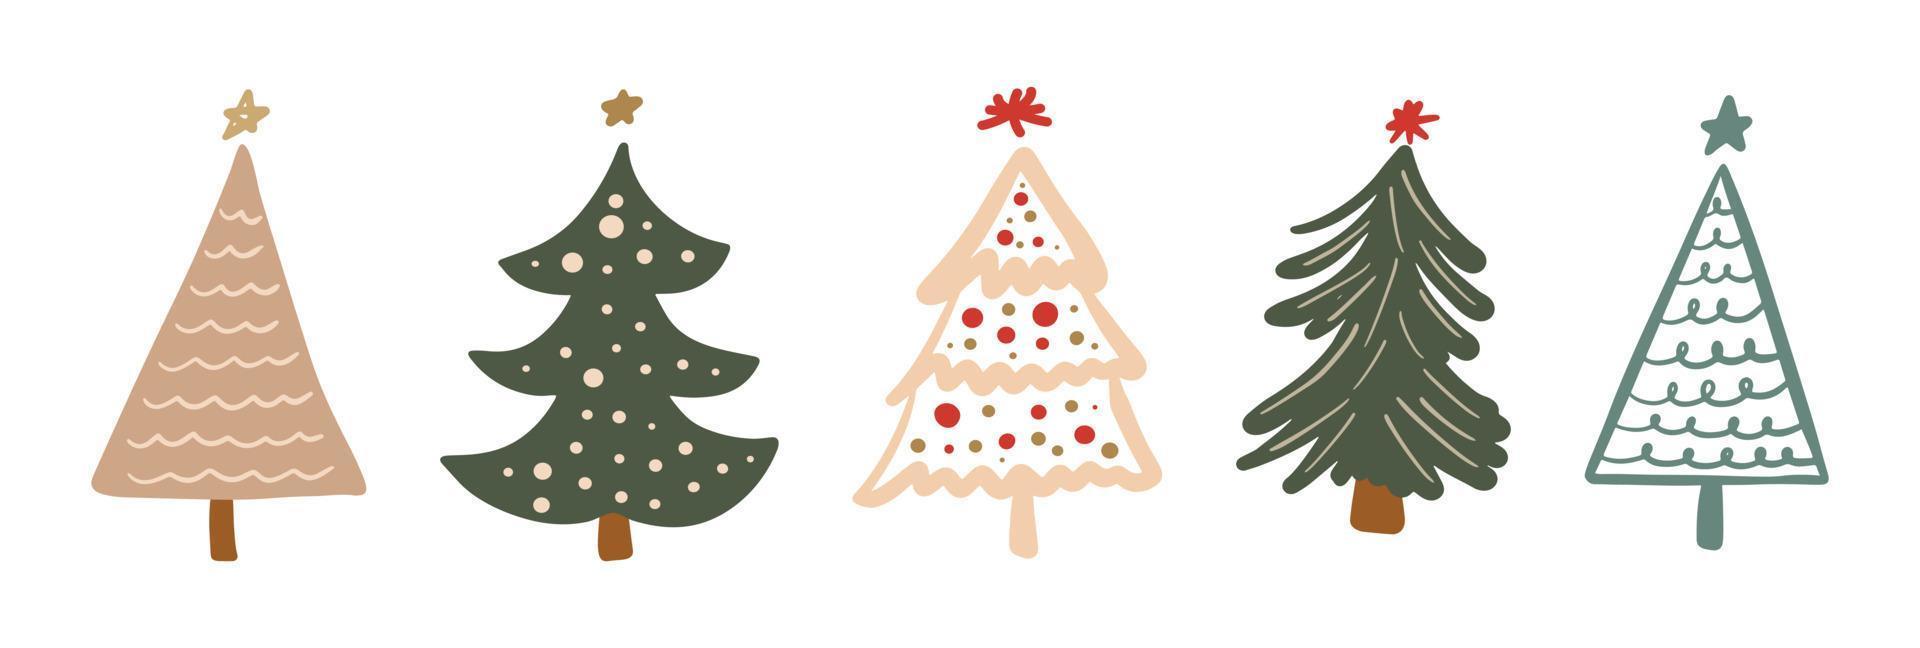 ensemble de griffonnage enfantin dessiné à la main d'arbre de Noël minimaliste simple. nouvel an festif, collection d'éléments de conception de vacances d'hiver vecteur